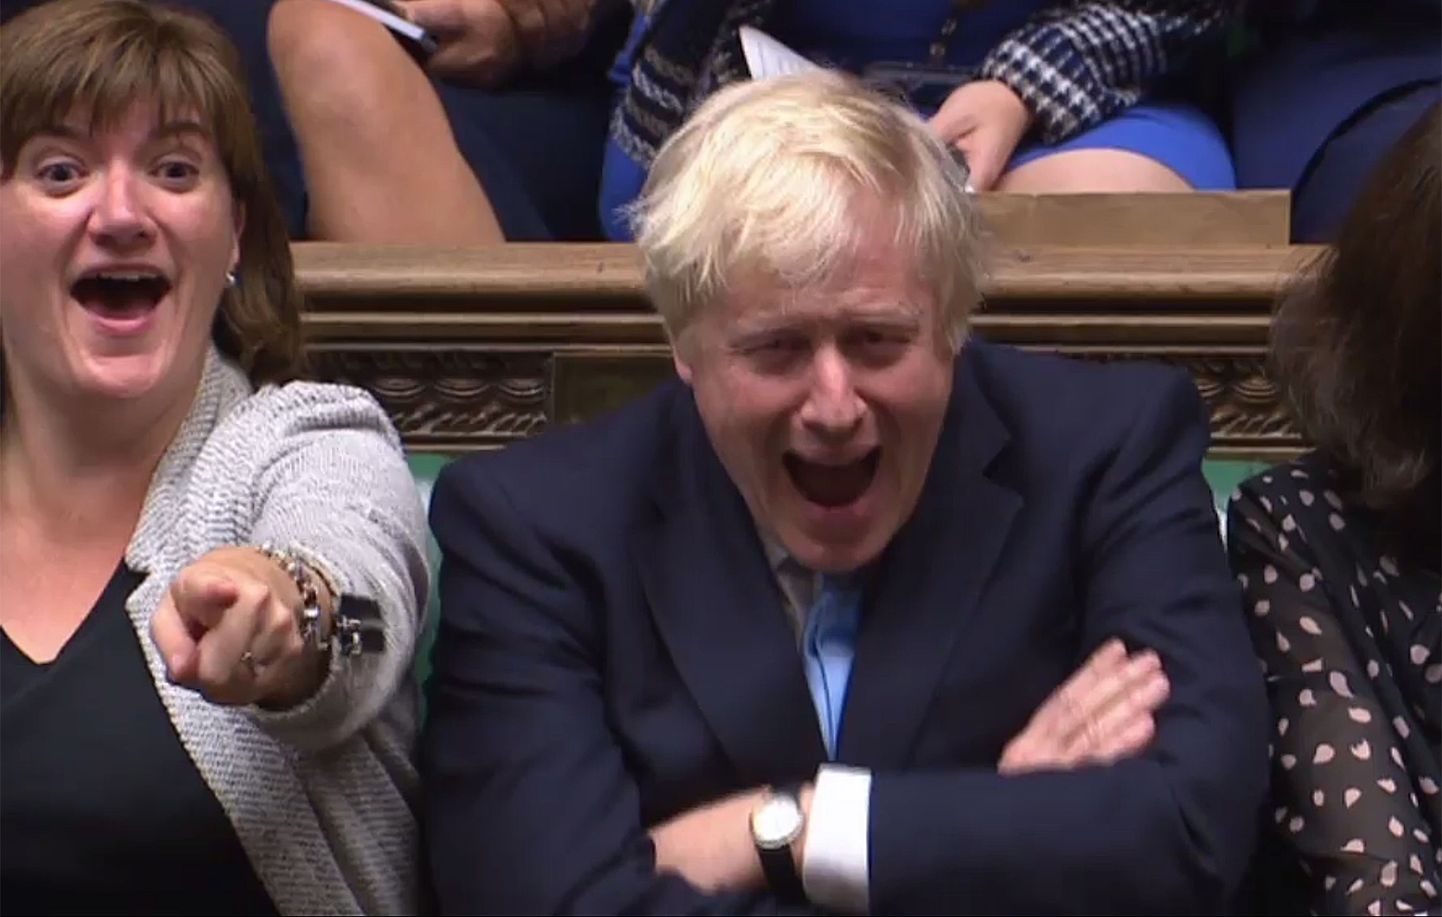 Briti peaminister Boris Johnson (paremal) ja kultuuriminister Nicky Morgan (vasakul) reageerimas alamkojas opositsioonijuht Jeremy Corbyni kõnele, pärast mida peaminister soovitud ennetähtaegsetest parlamendivalimistest vähemalt esialgu ilma jäi.